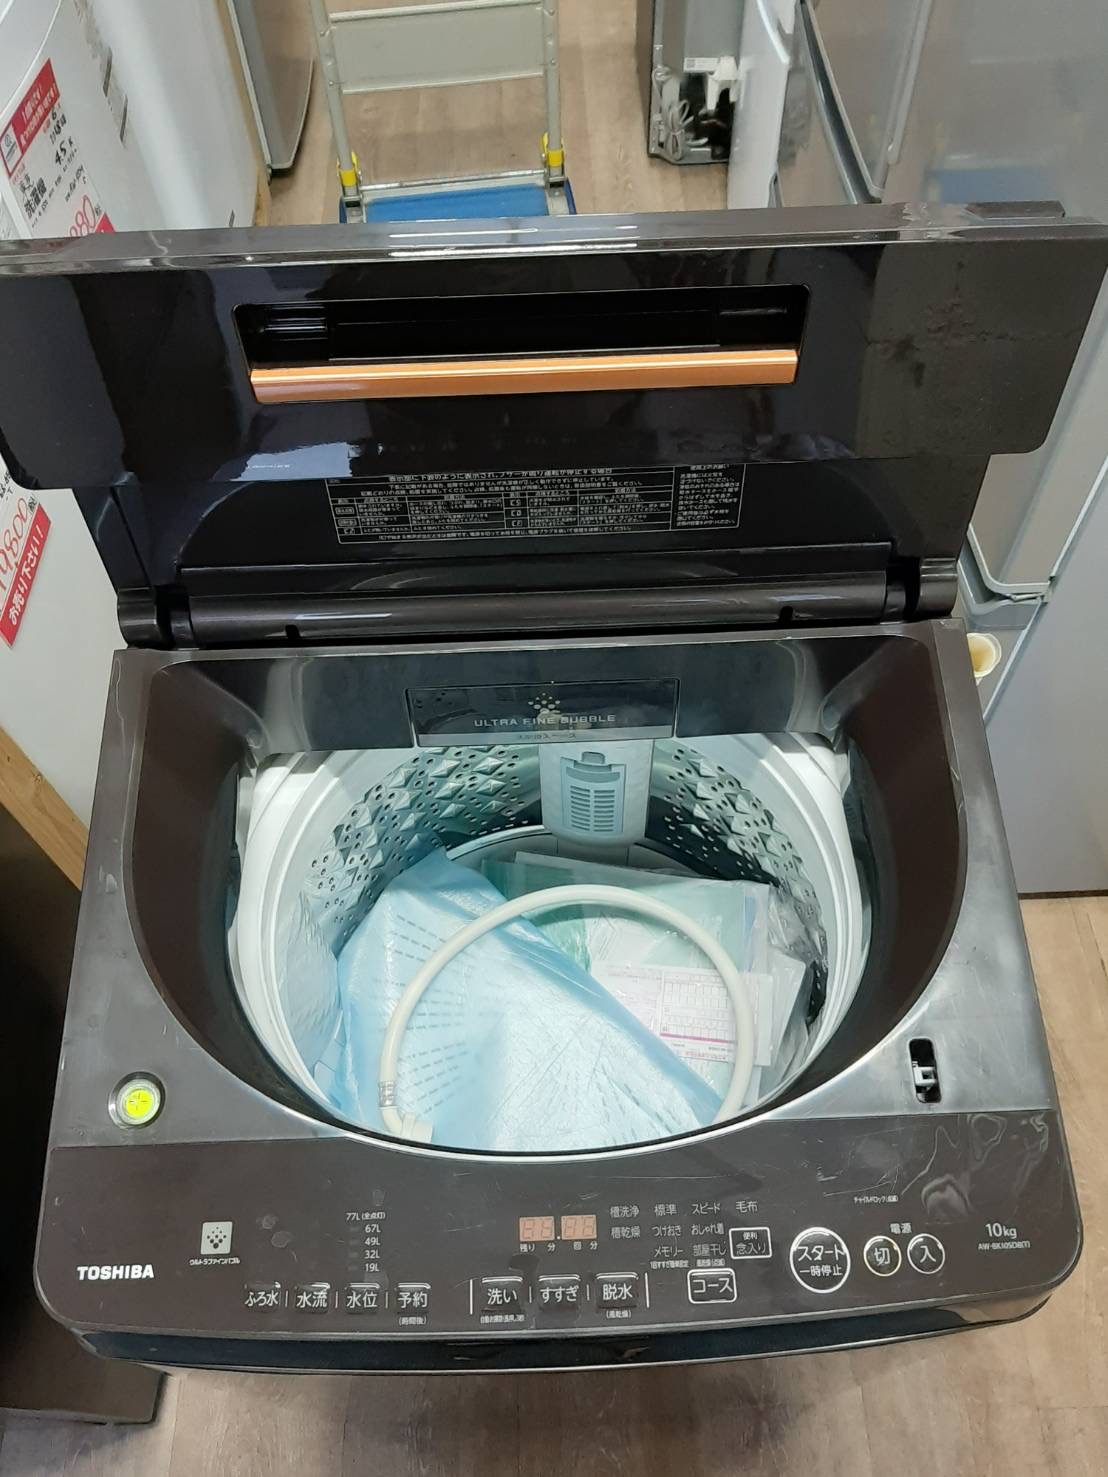 ファミリー向け8.0kg 洗濯機 東芝 JS04